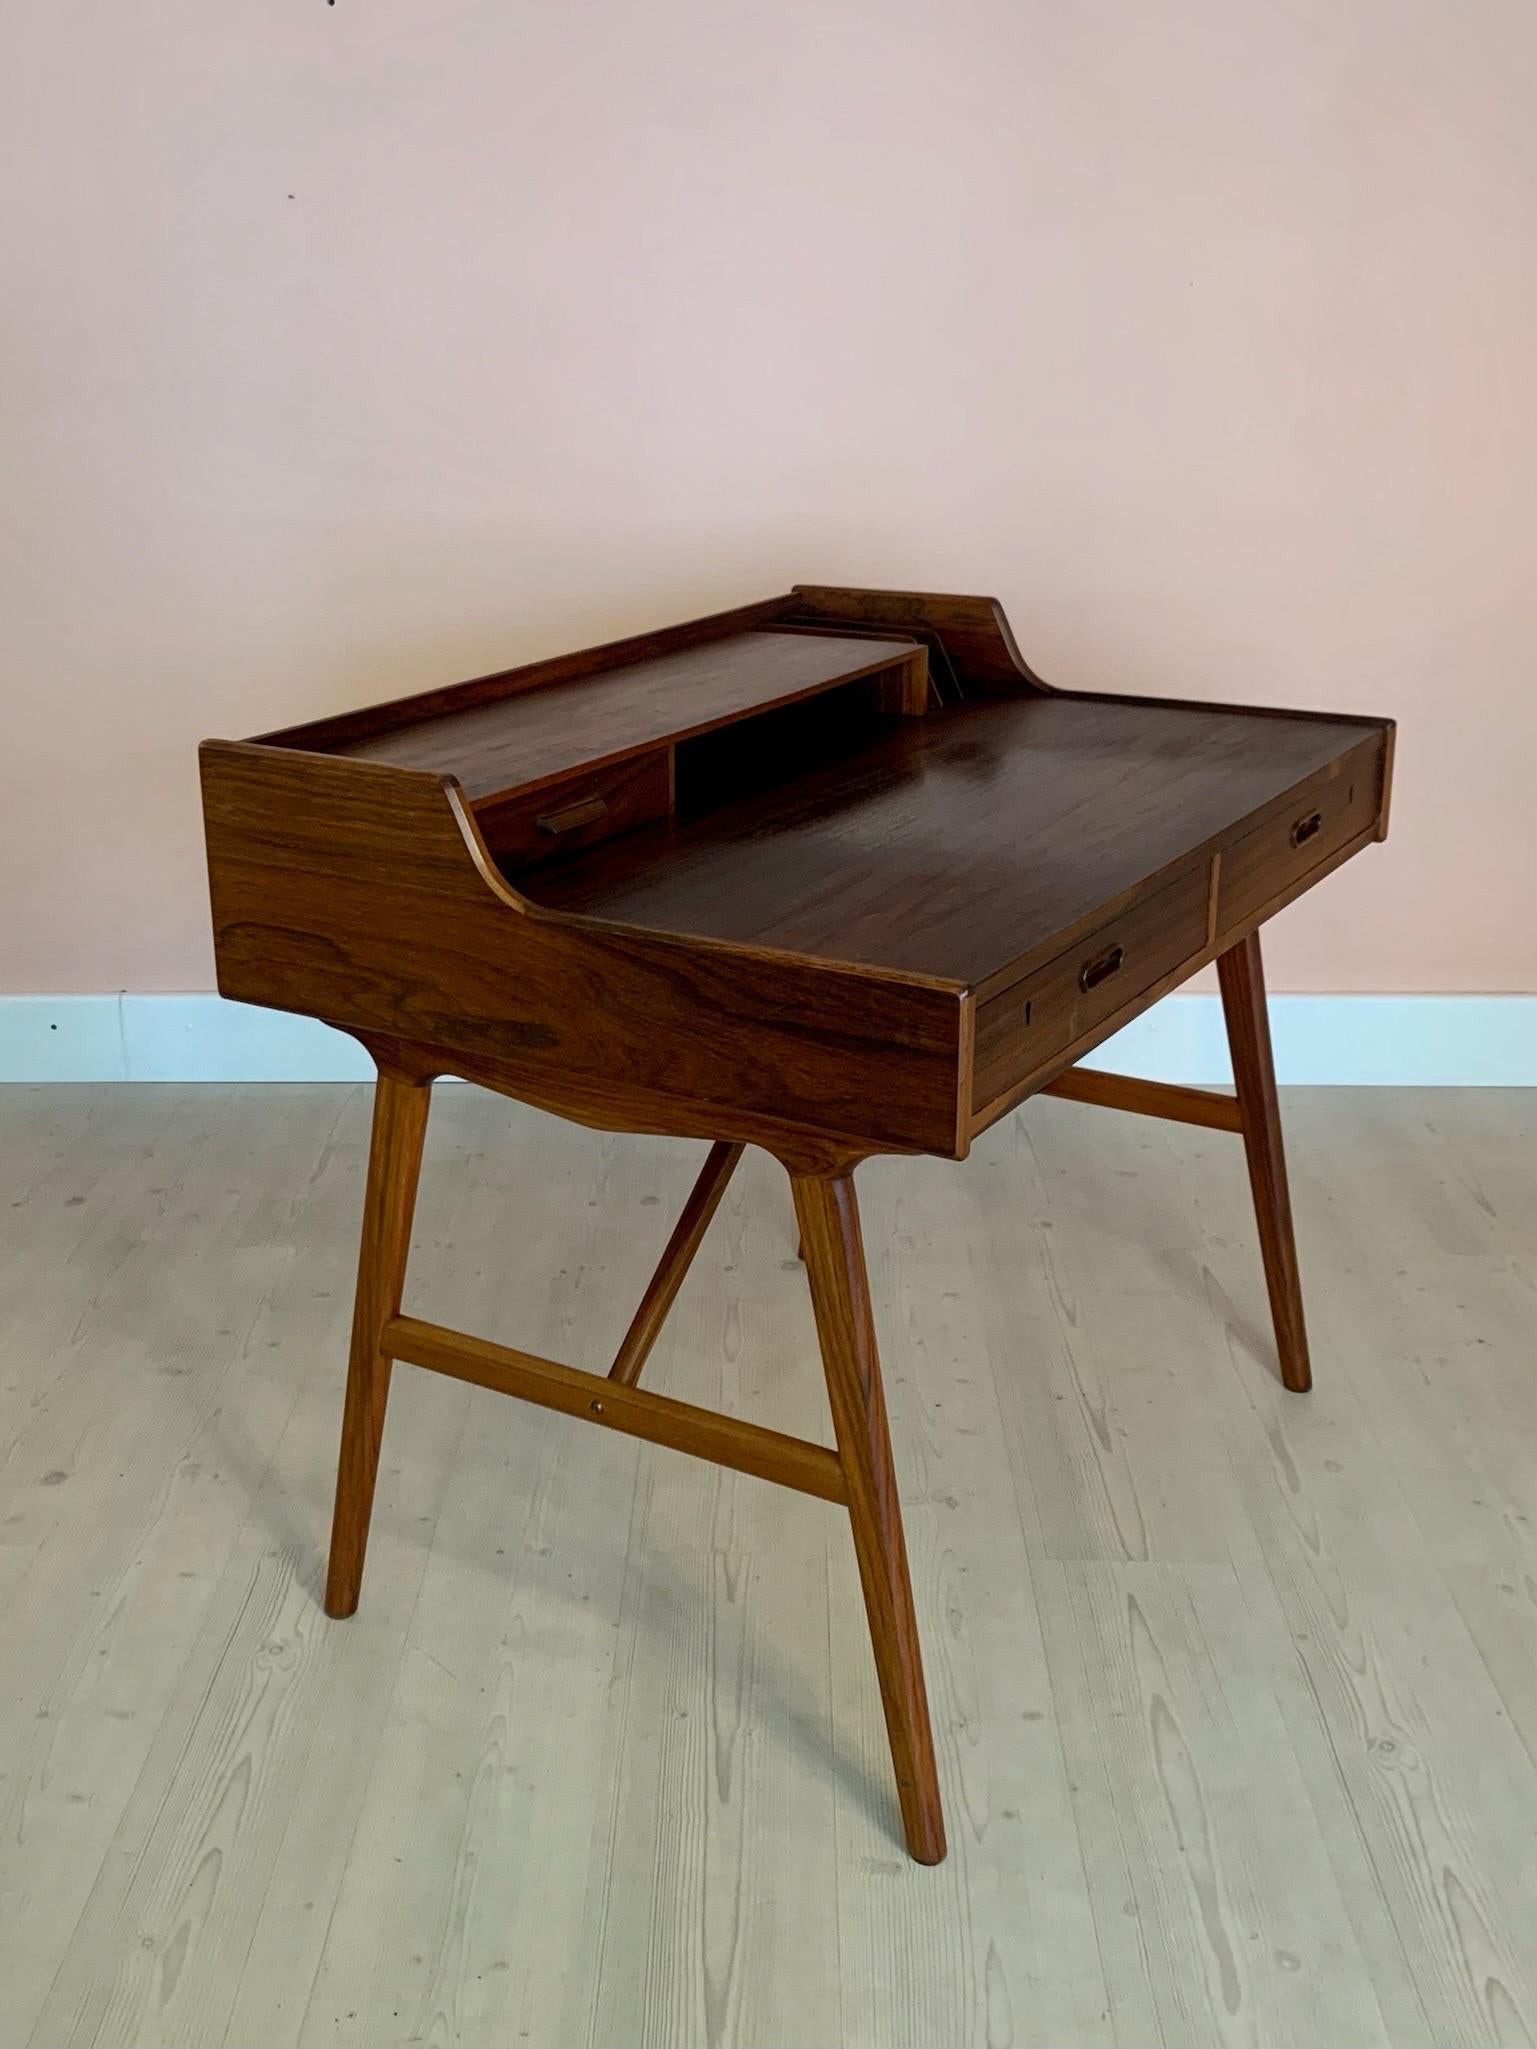 20th Century Skandinavian Palisander Desk by Arne Wahl Iversen 1950s For Sale